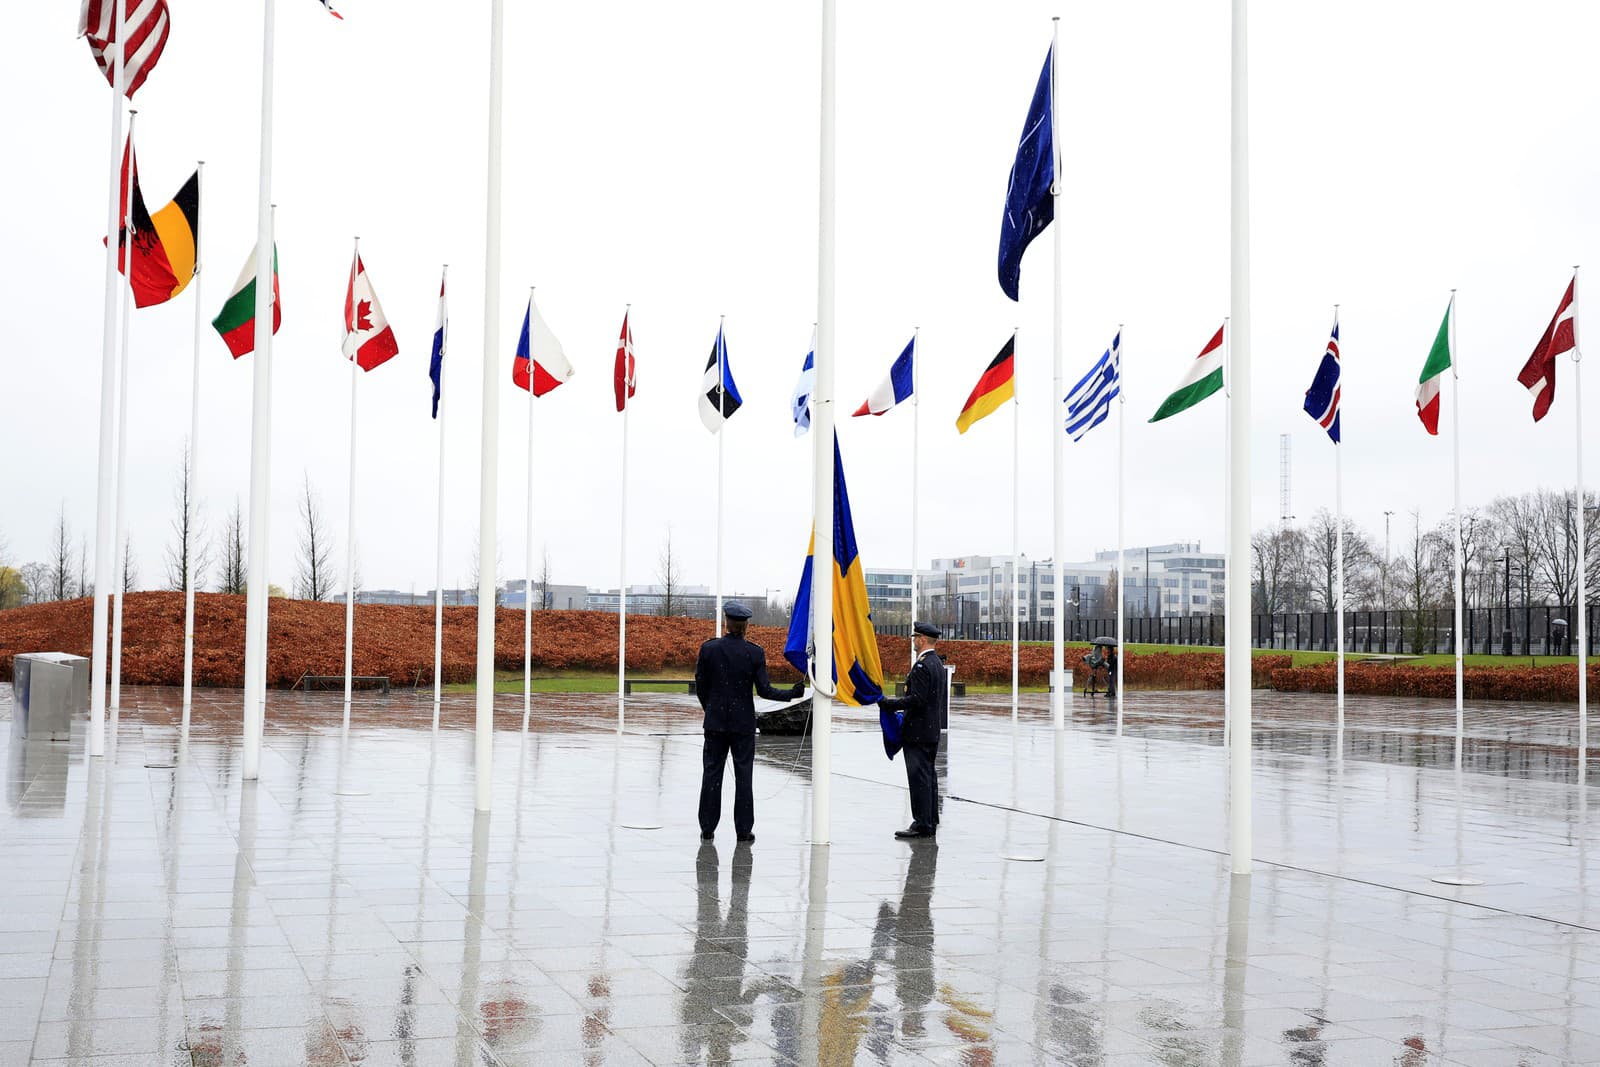 Dvaja vojaci sa pripravujú na vztýčenie švédskej vlajky počas slávnostného ceremoniálu pri príležitosti vstupu Švédska do NATO 11. marca 2024 v sídle NATO v Bruseli.